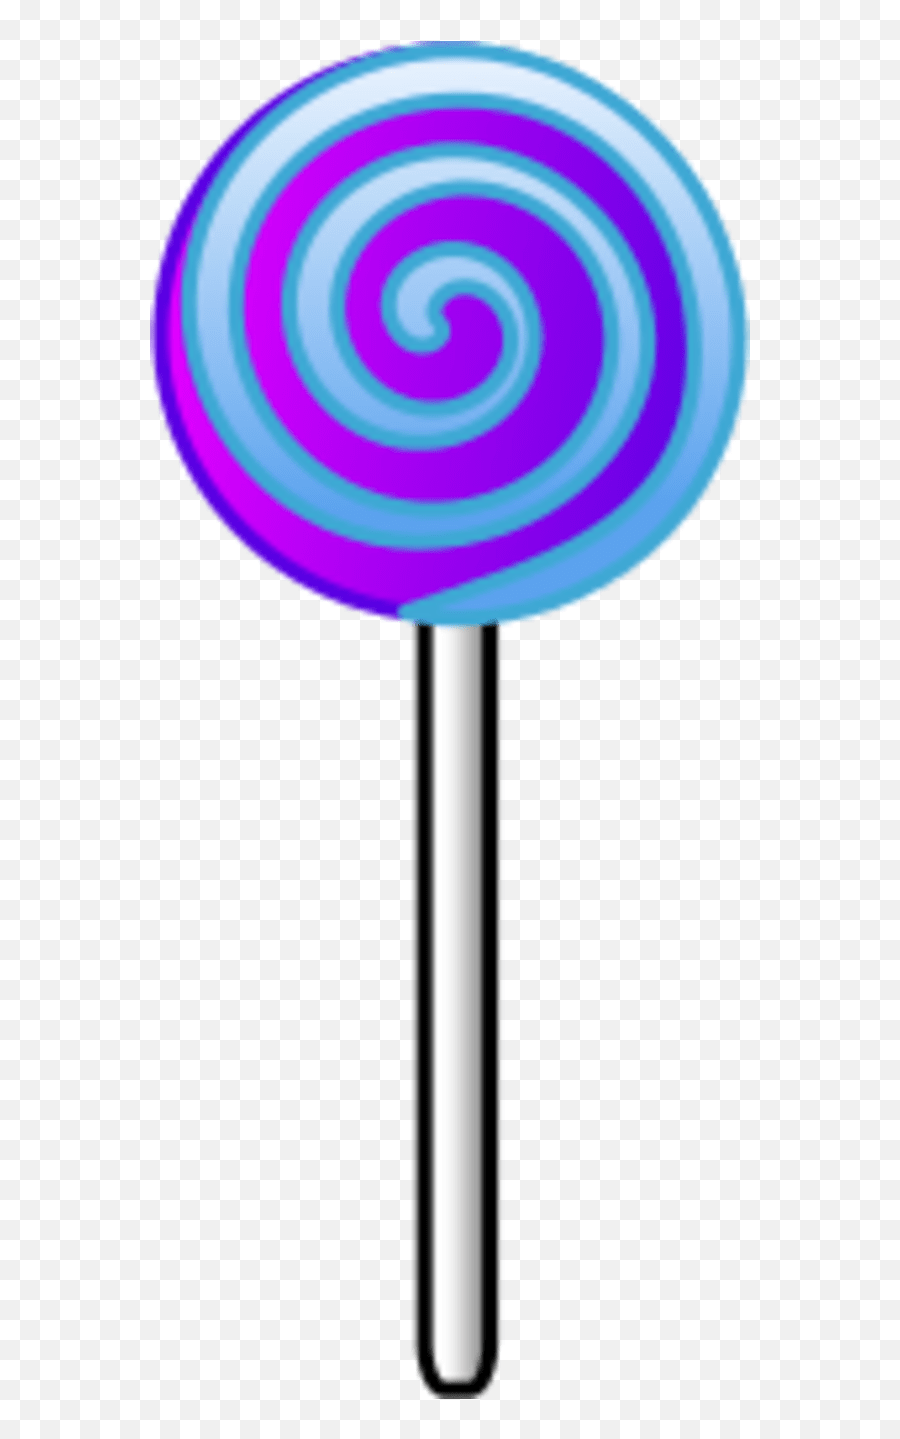 Lollipop Transparent Background - Lollipop Clipart Png,Lollipop Transparent